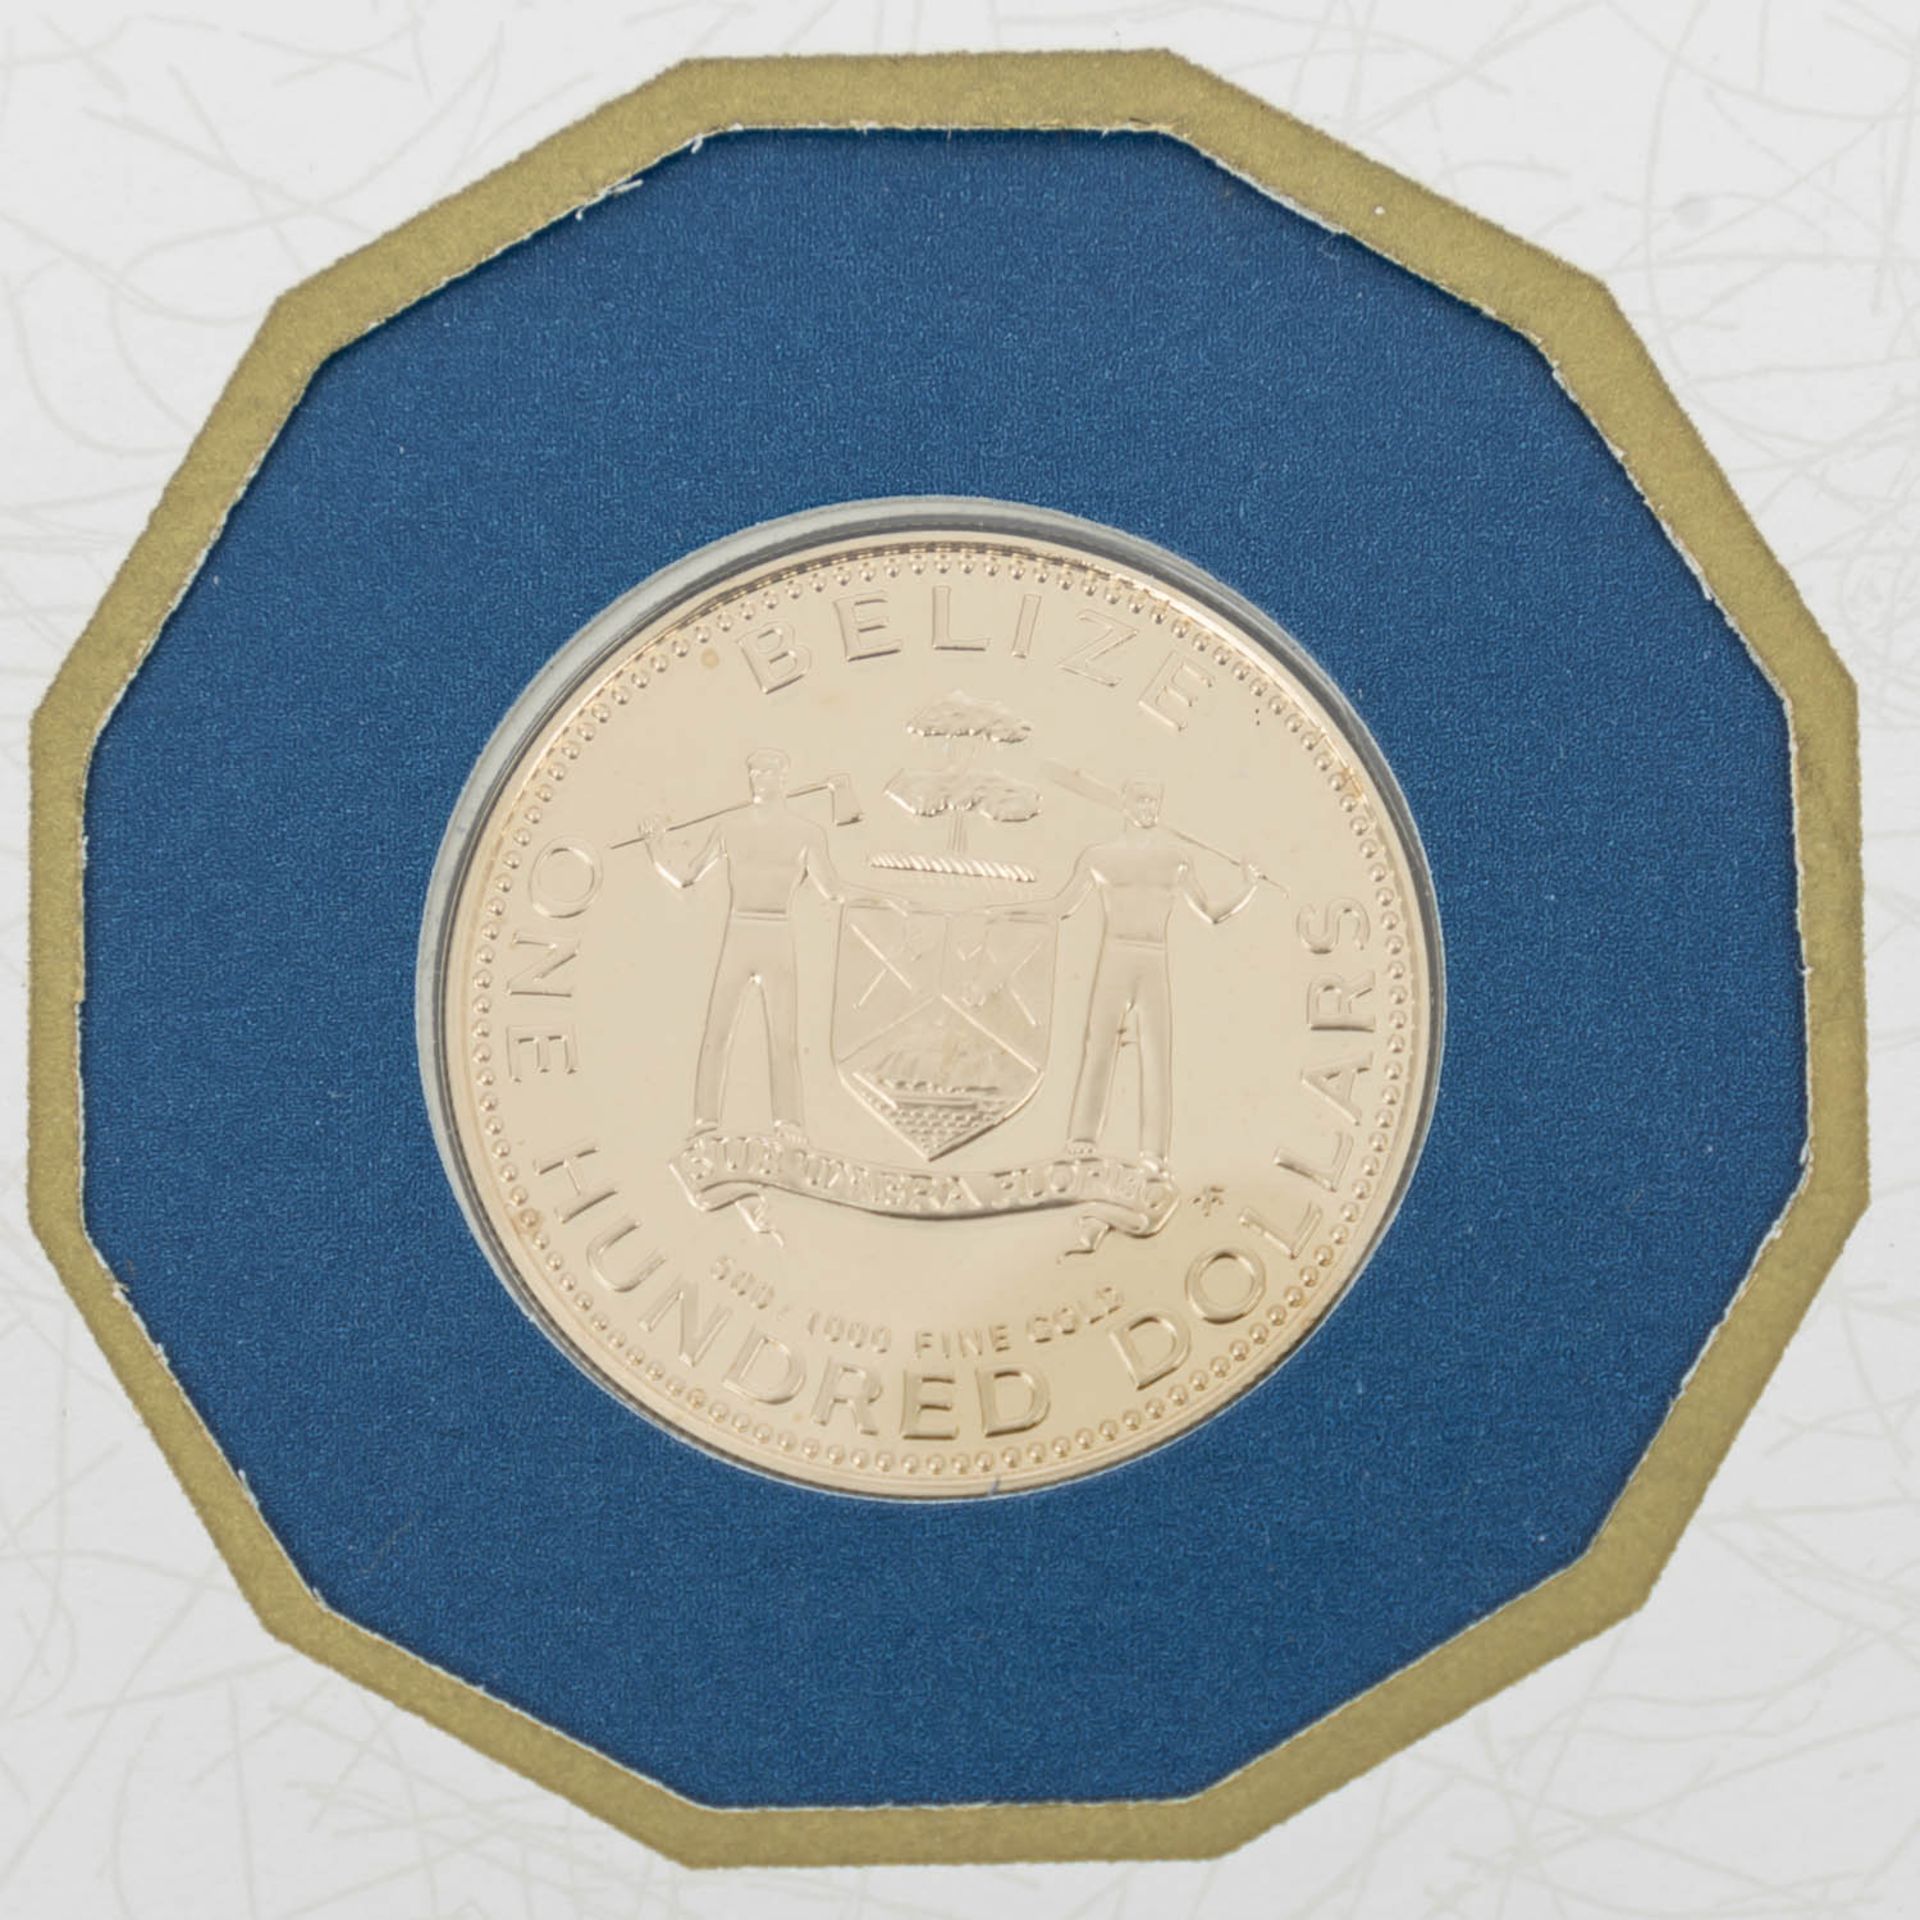 Belize / British Honduras - 100 Dollars 1979, GOLD, ca. 3,1 Gramm fein (500/1000er), p - Bild 3 aus 3